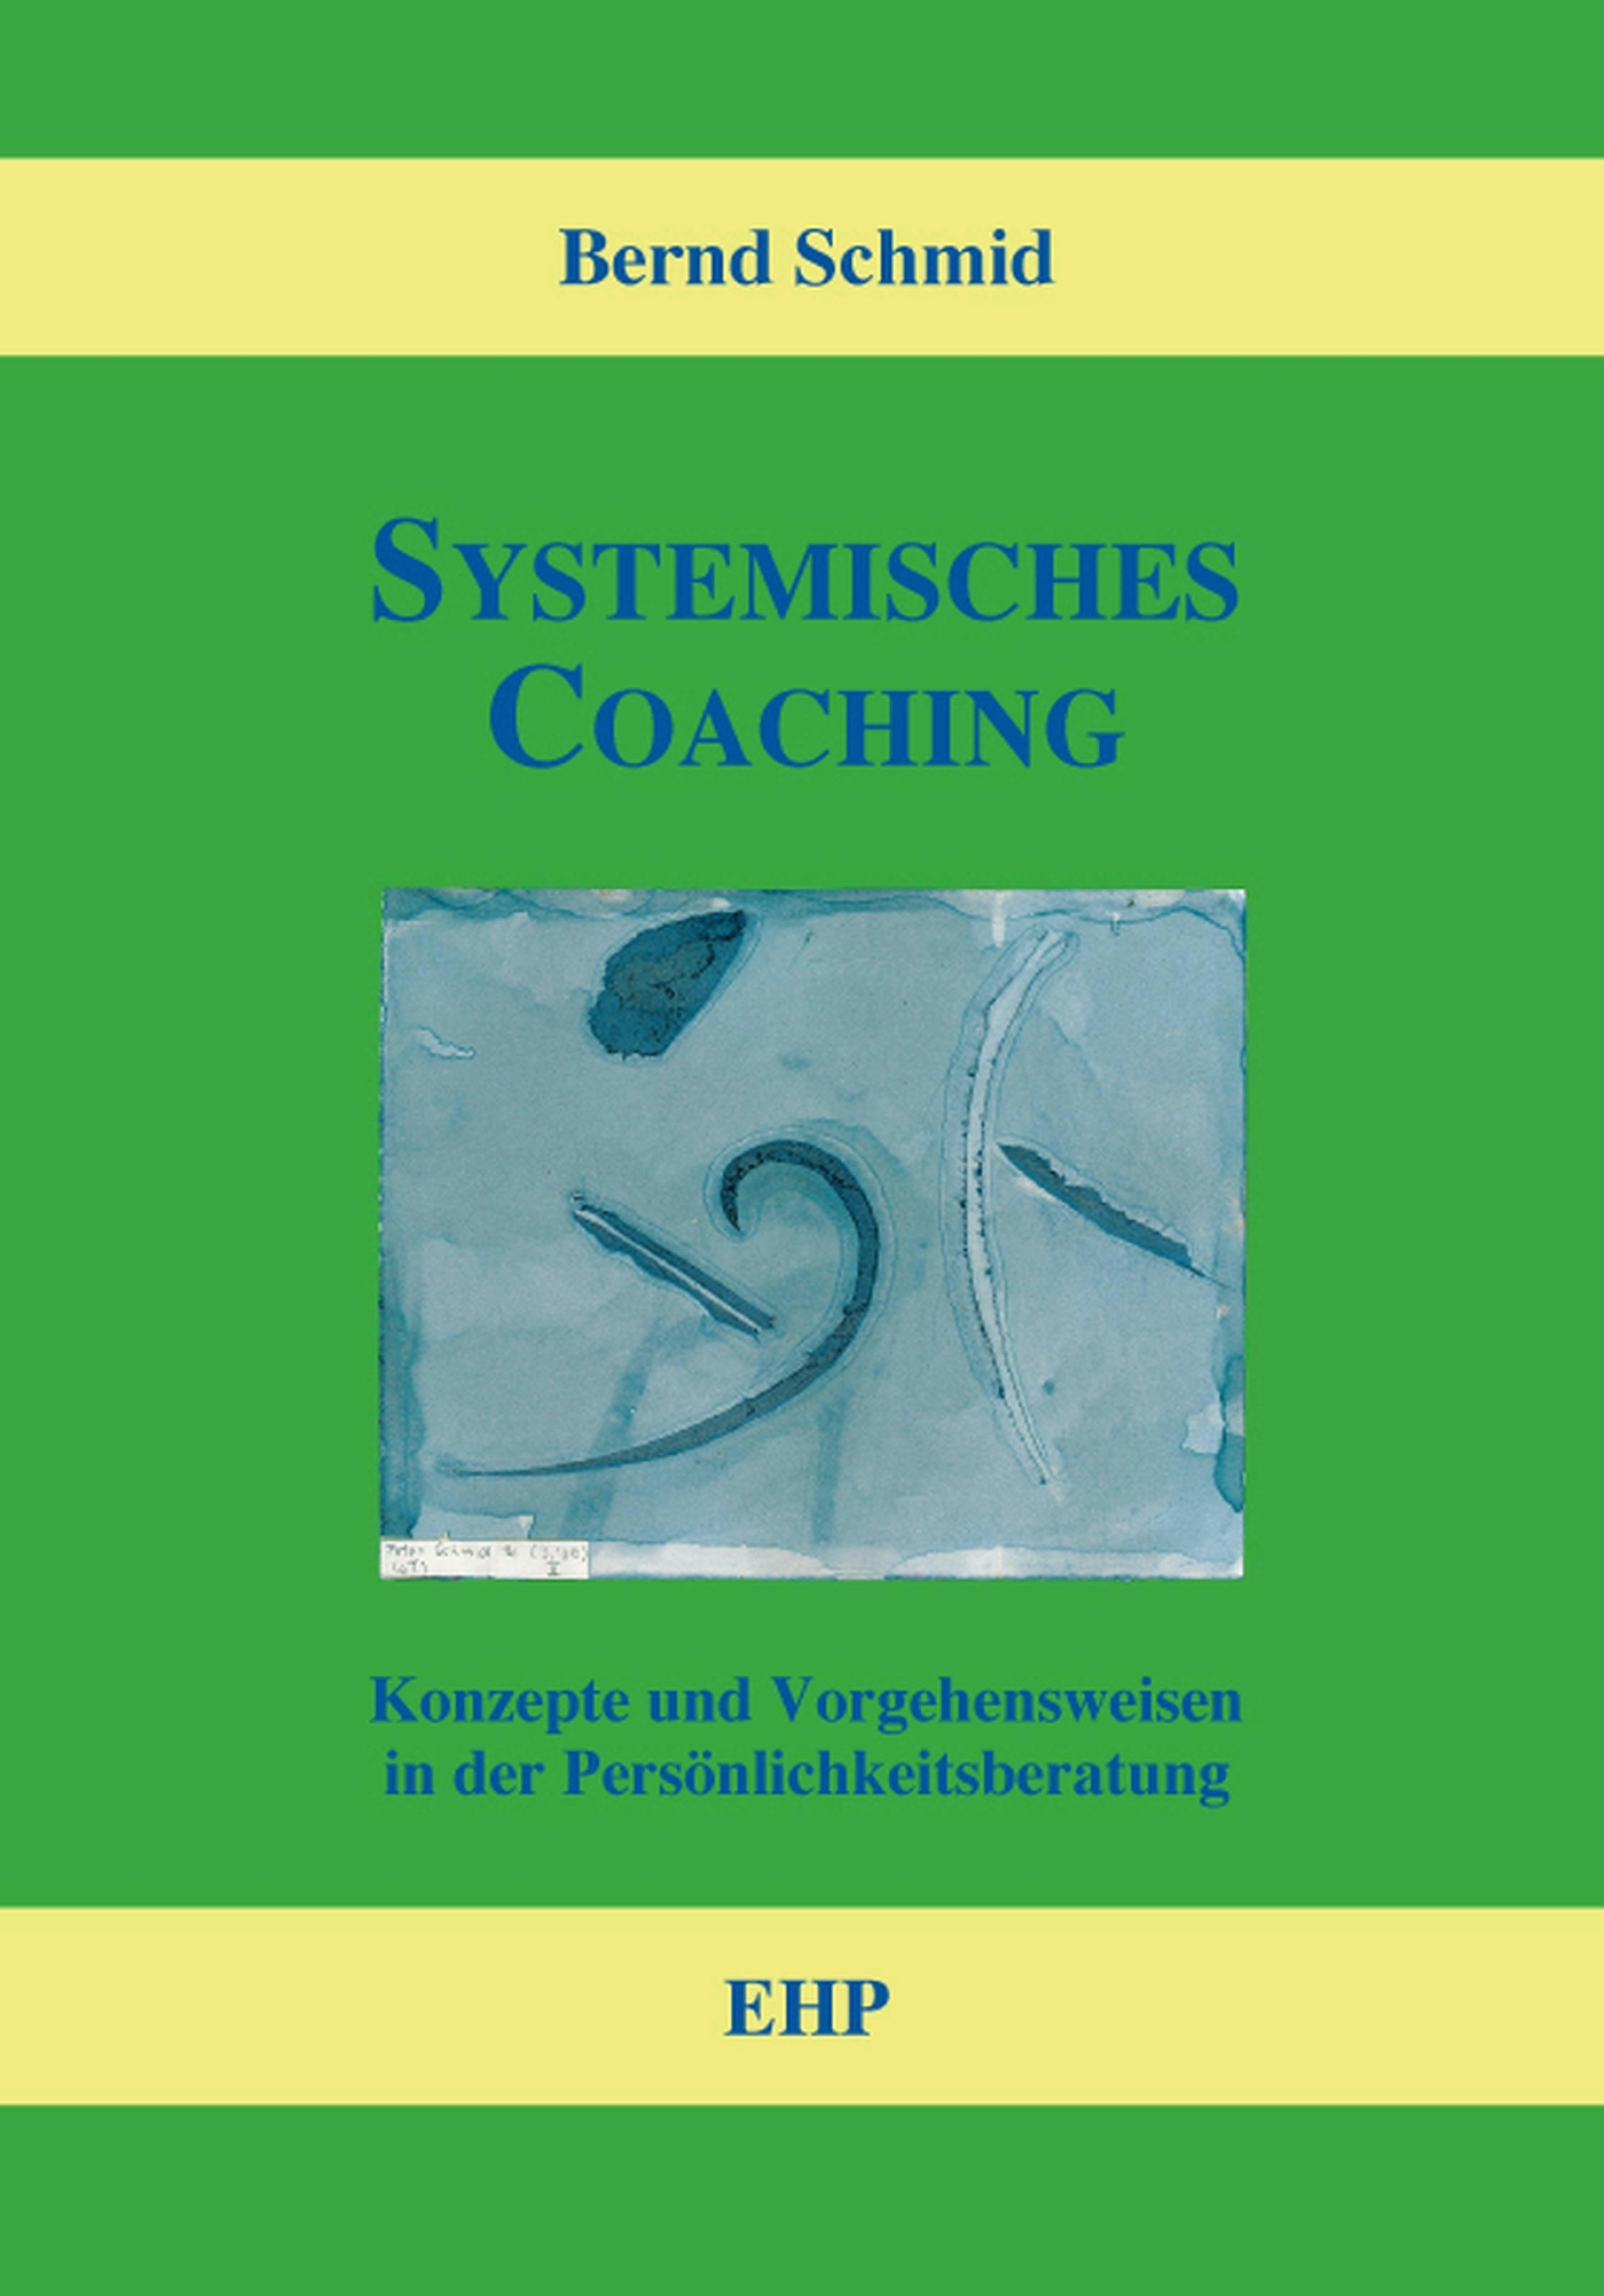 Systemisches Coaching: Konzepte und Vorgehensweisen in der Persönlichkeitsberatung - Bernd Schmid, Ingeborg Weidner